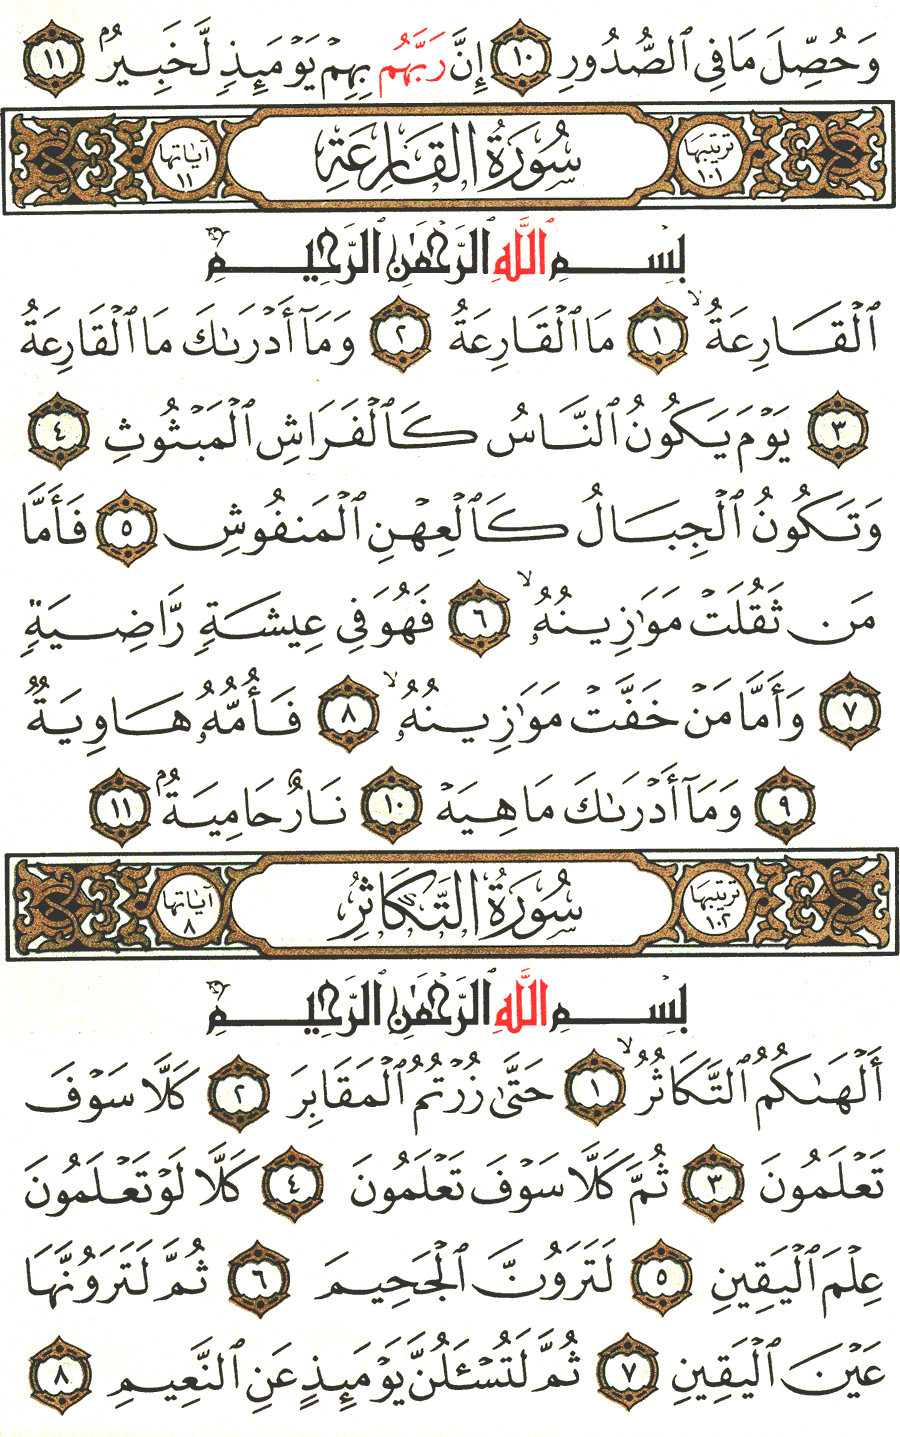 الصفحة رقم 600 من القرآن الكريم مكتوبة من المصحف